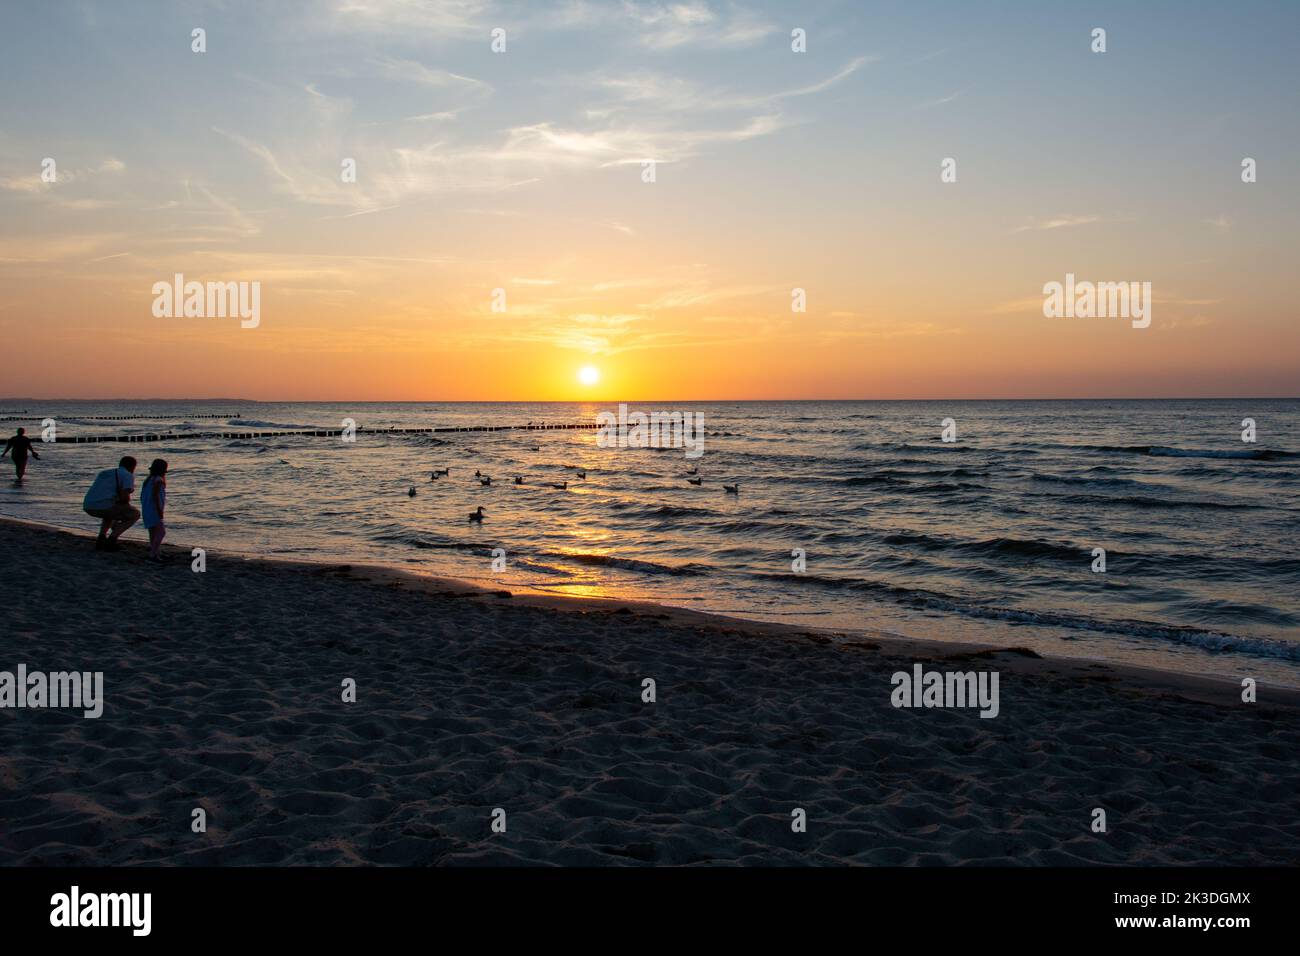 Strandidylle - die Menschen genießen den Sonnenuntergang über dem Meer, mit hölzernen Wellenbrechern im Wasser und einigen Möwen Stockfoto